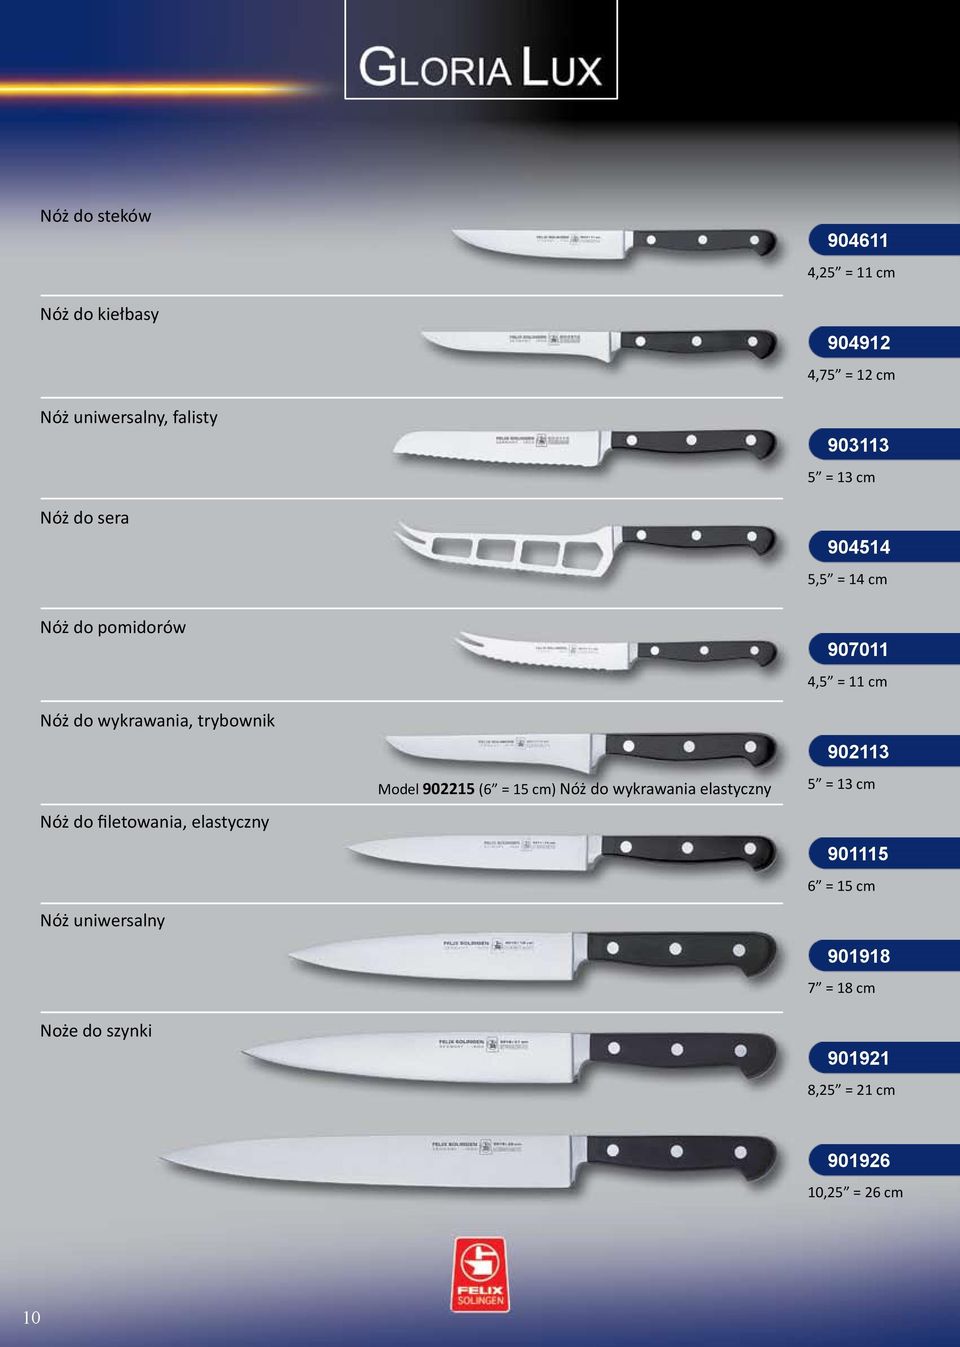 filetowania, elastyczny Nóż uniwersalny Noże do szynki Model 902215 (6 = 15 cm) Nóż do wykrawania